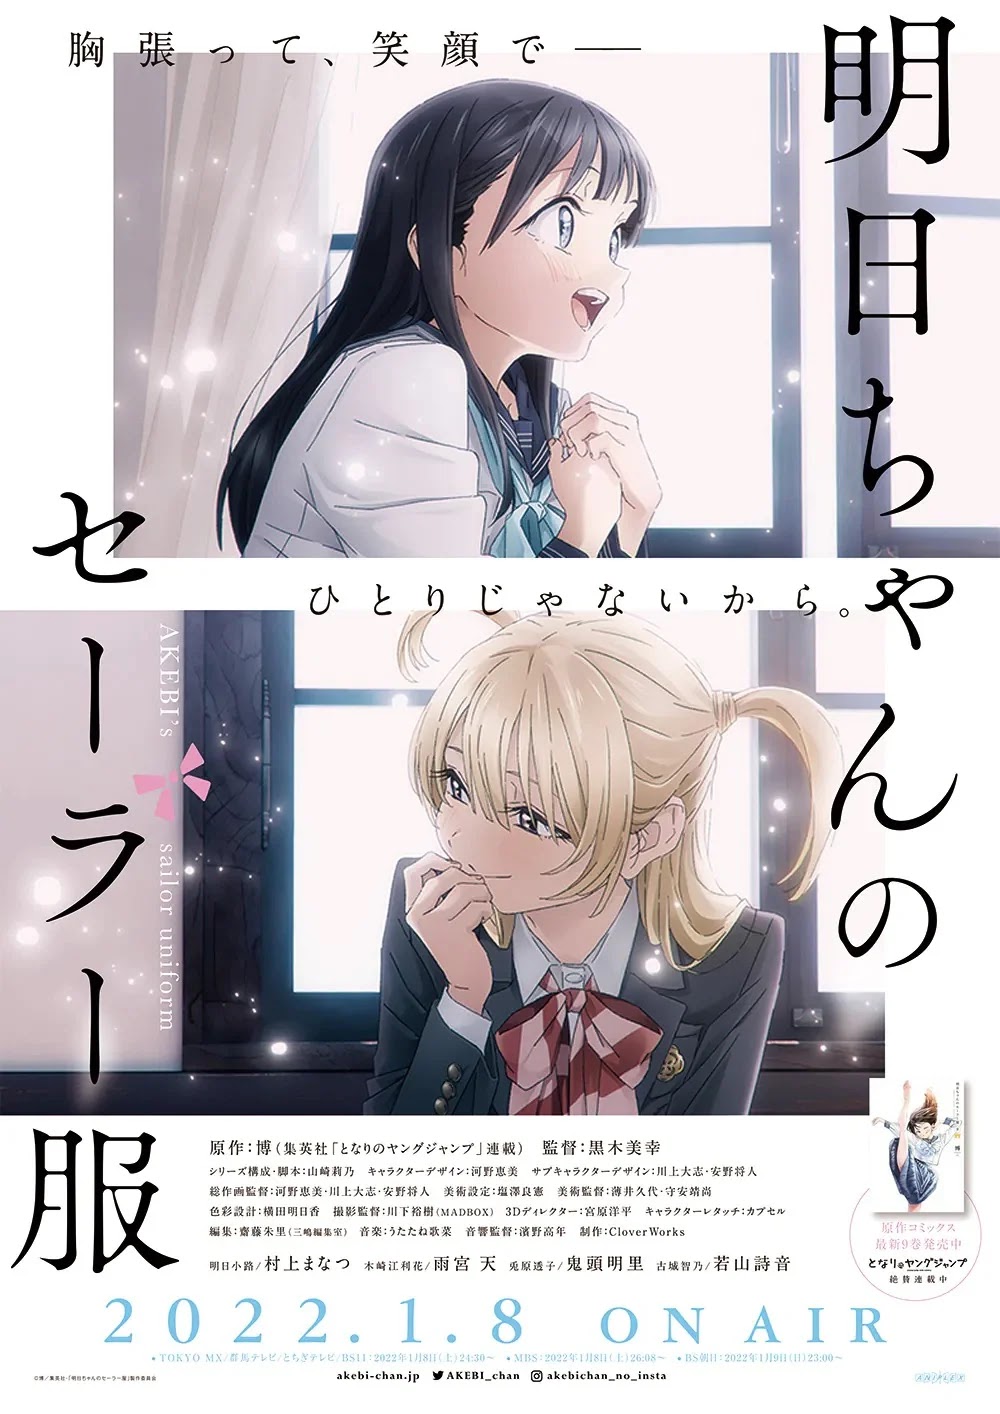 O Anime Akebi-chan no Sailor-fuku Divulga novo Visual e Confirma Data de Estreia